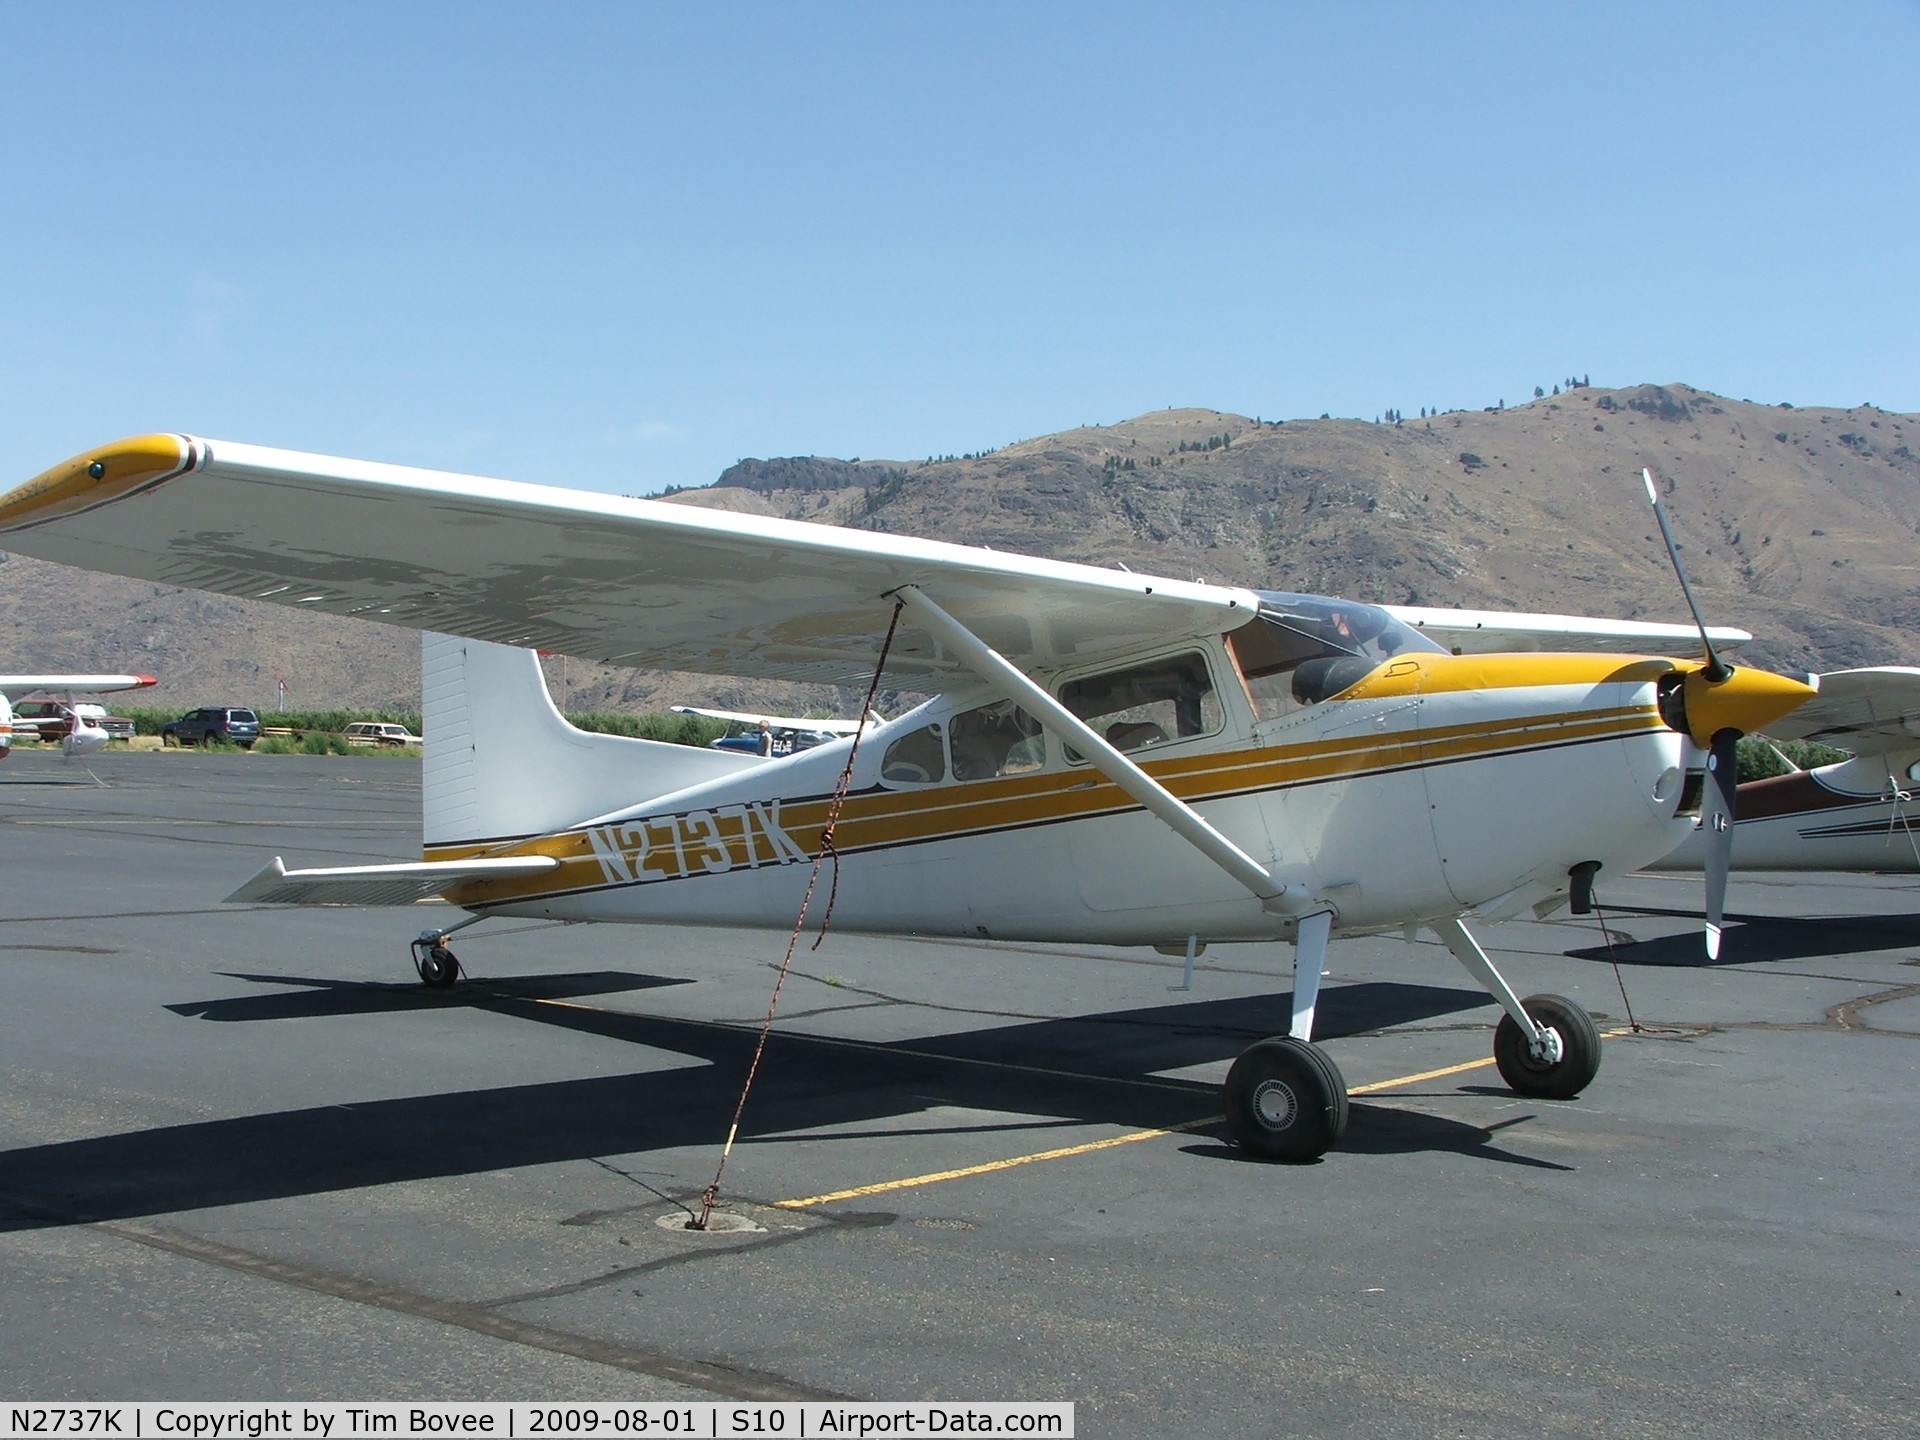 N2737K, 1979 Cessna 180K Skywagon C/N 18053051, Let's go